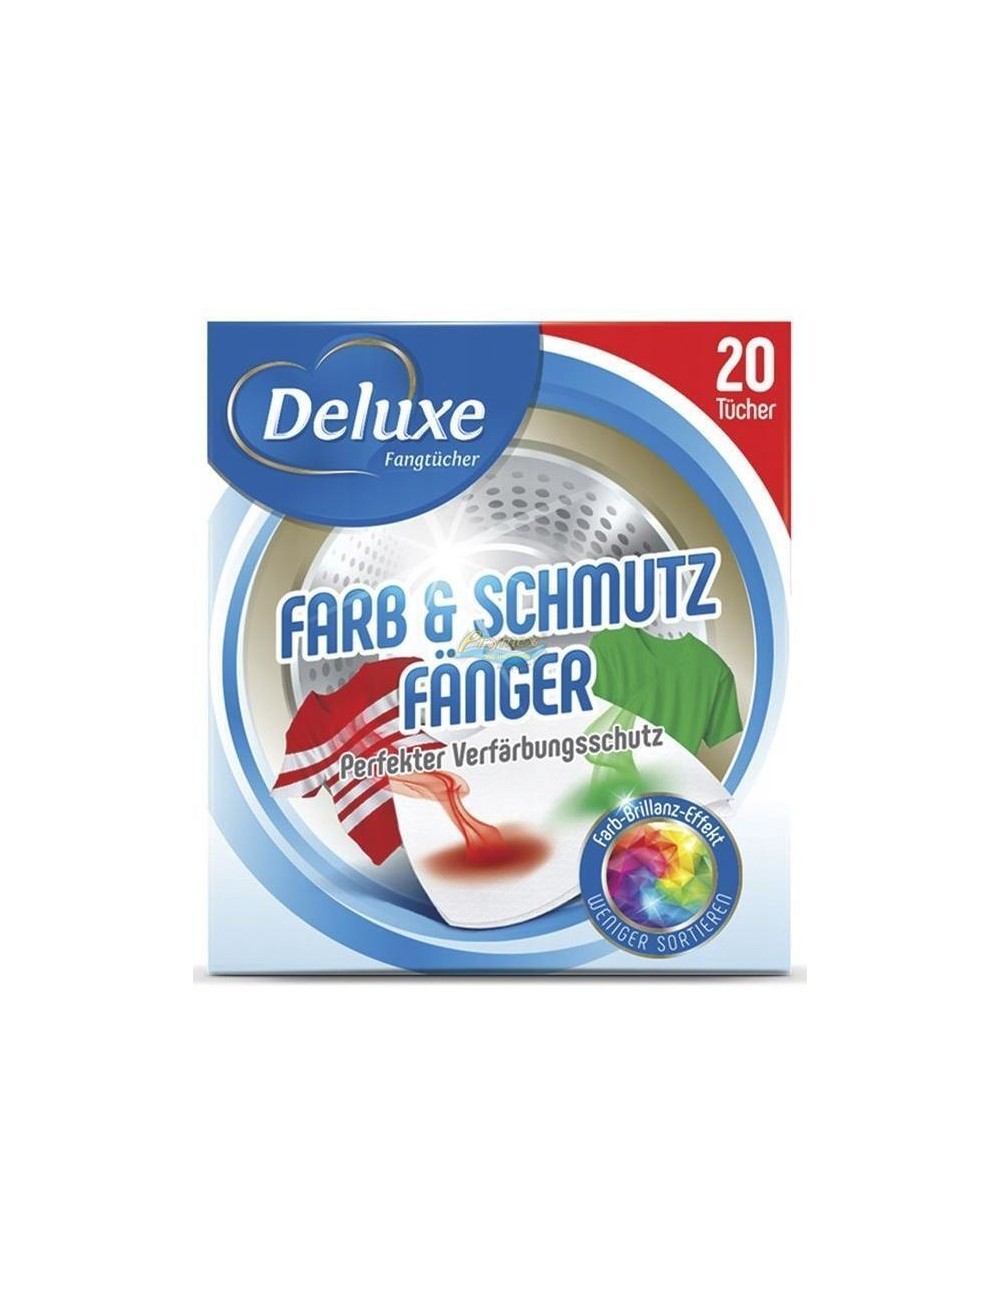 Deluxe Farb & Schmutz Fänger Niemieckie Chusteczki Wyłapujące Kolory 20 szt